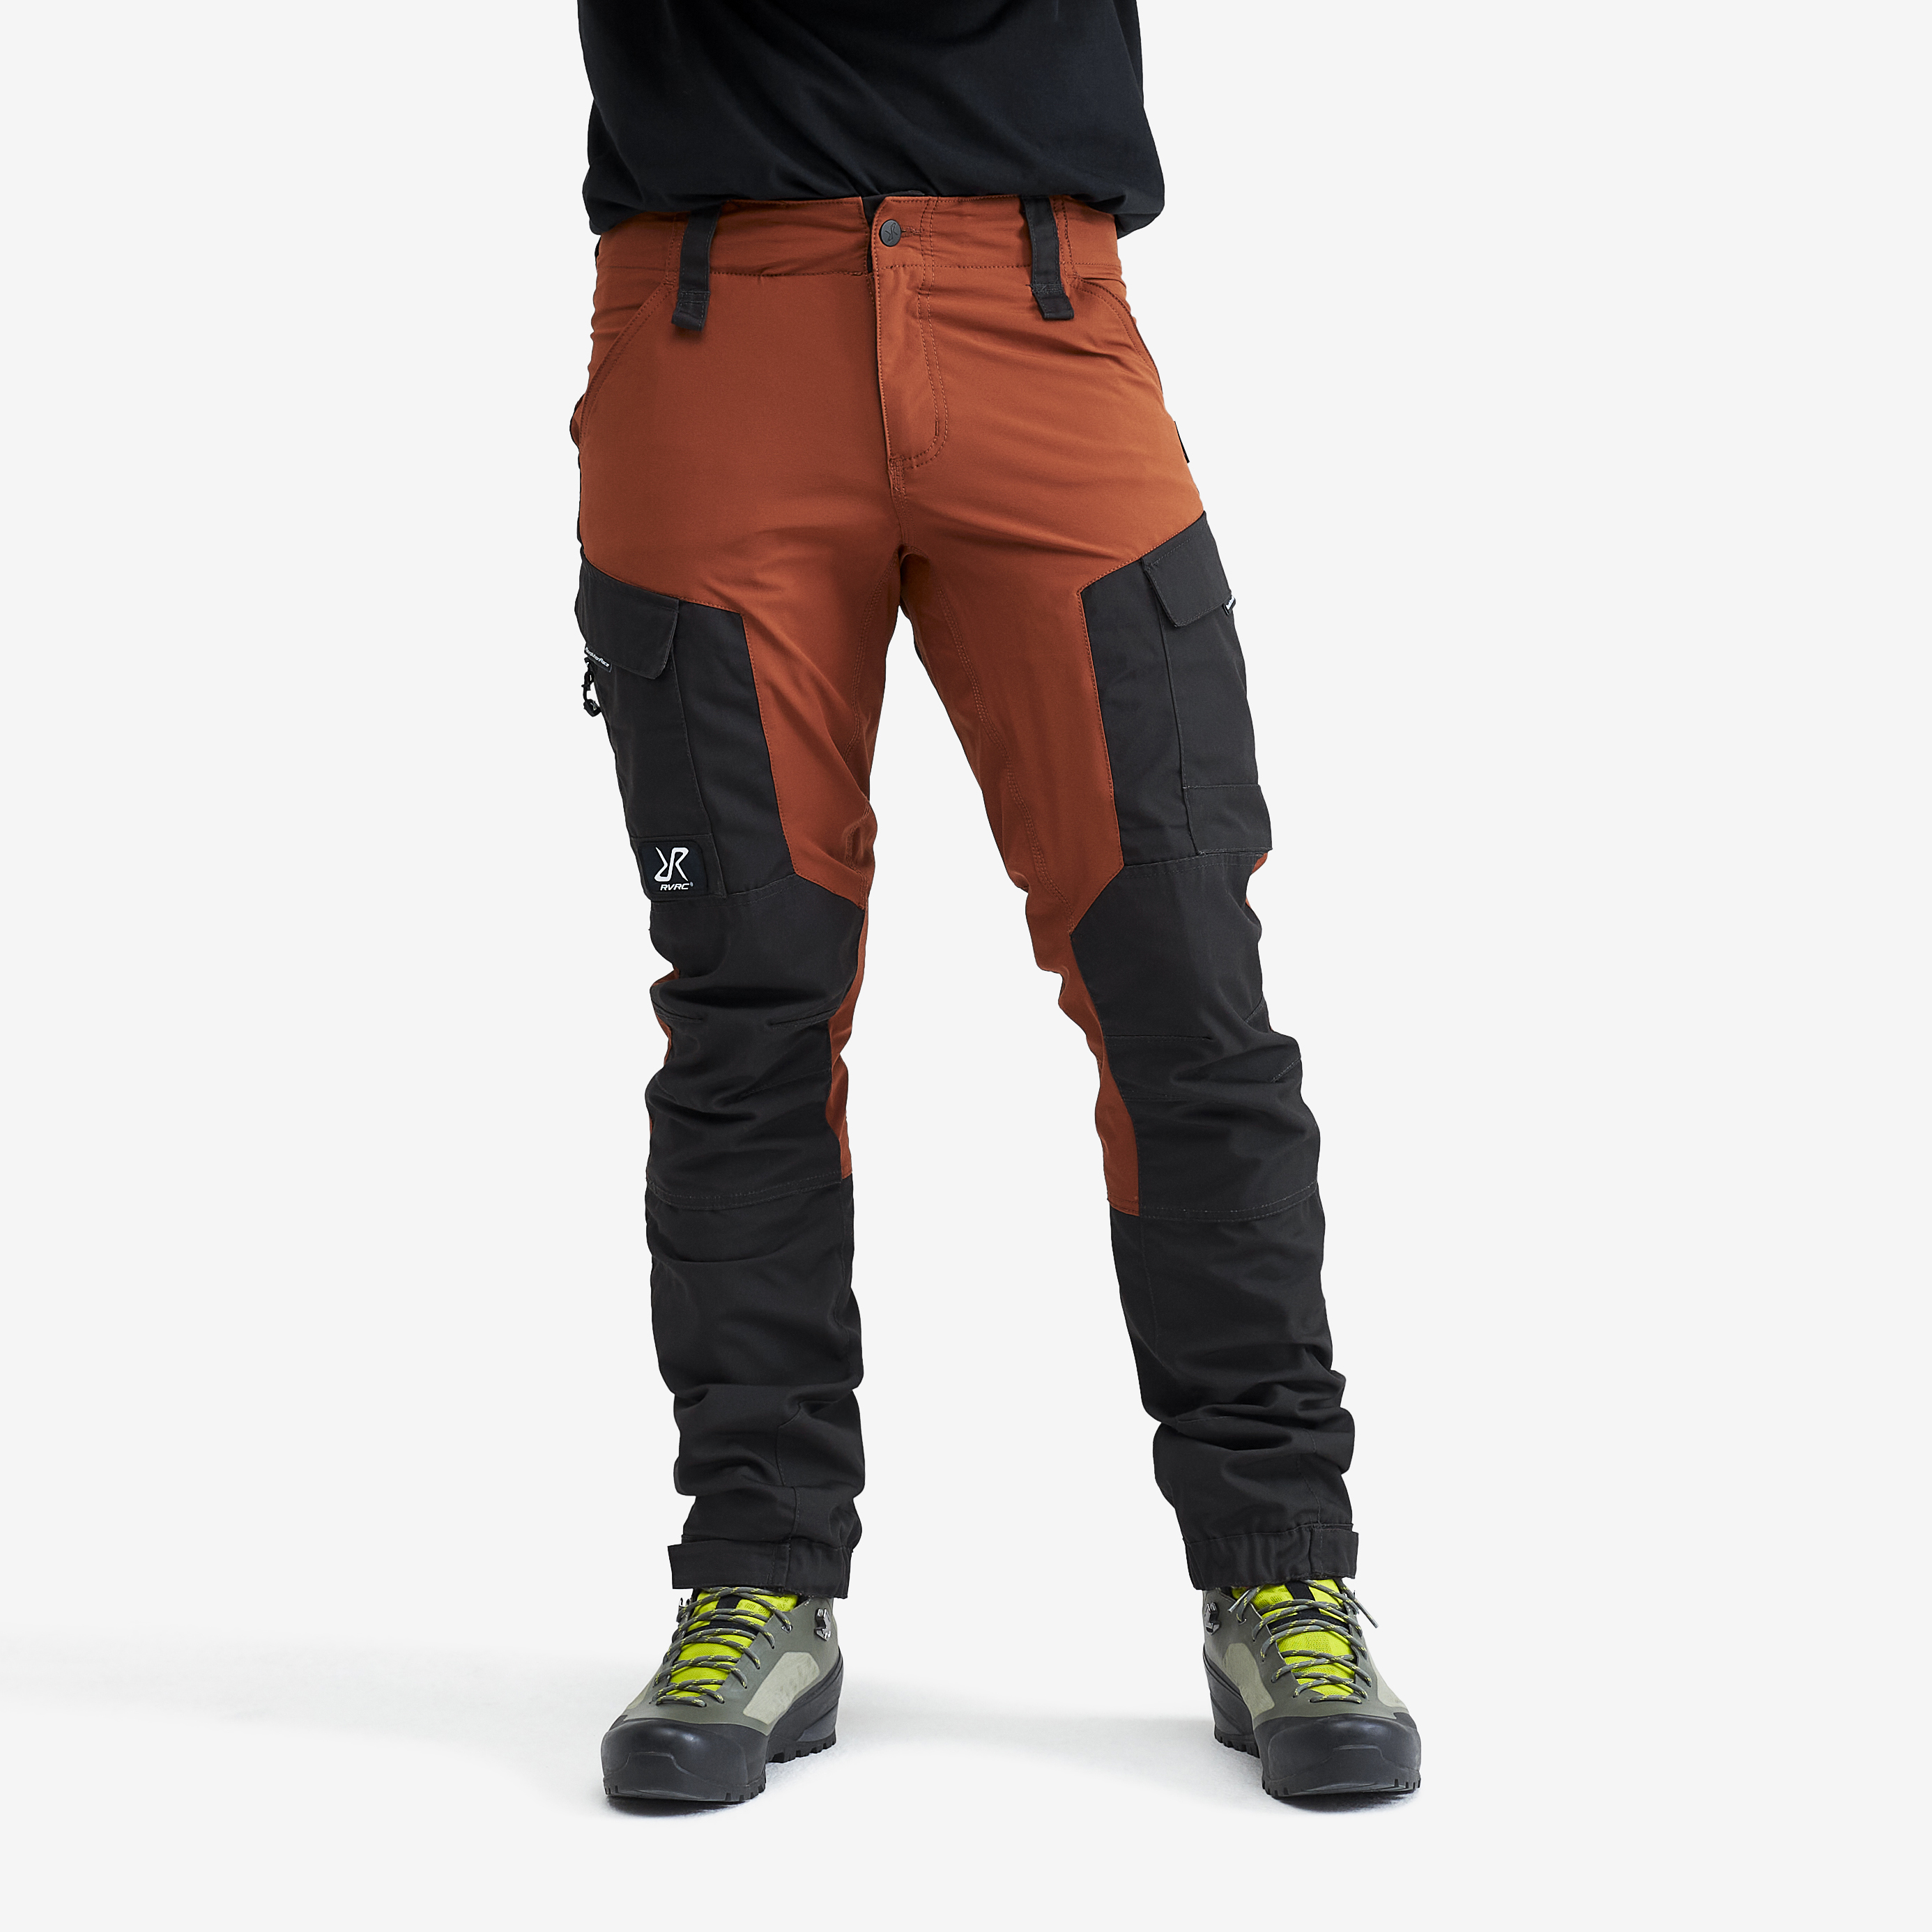 RVRC GP outdoor pants for men in orange